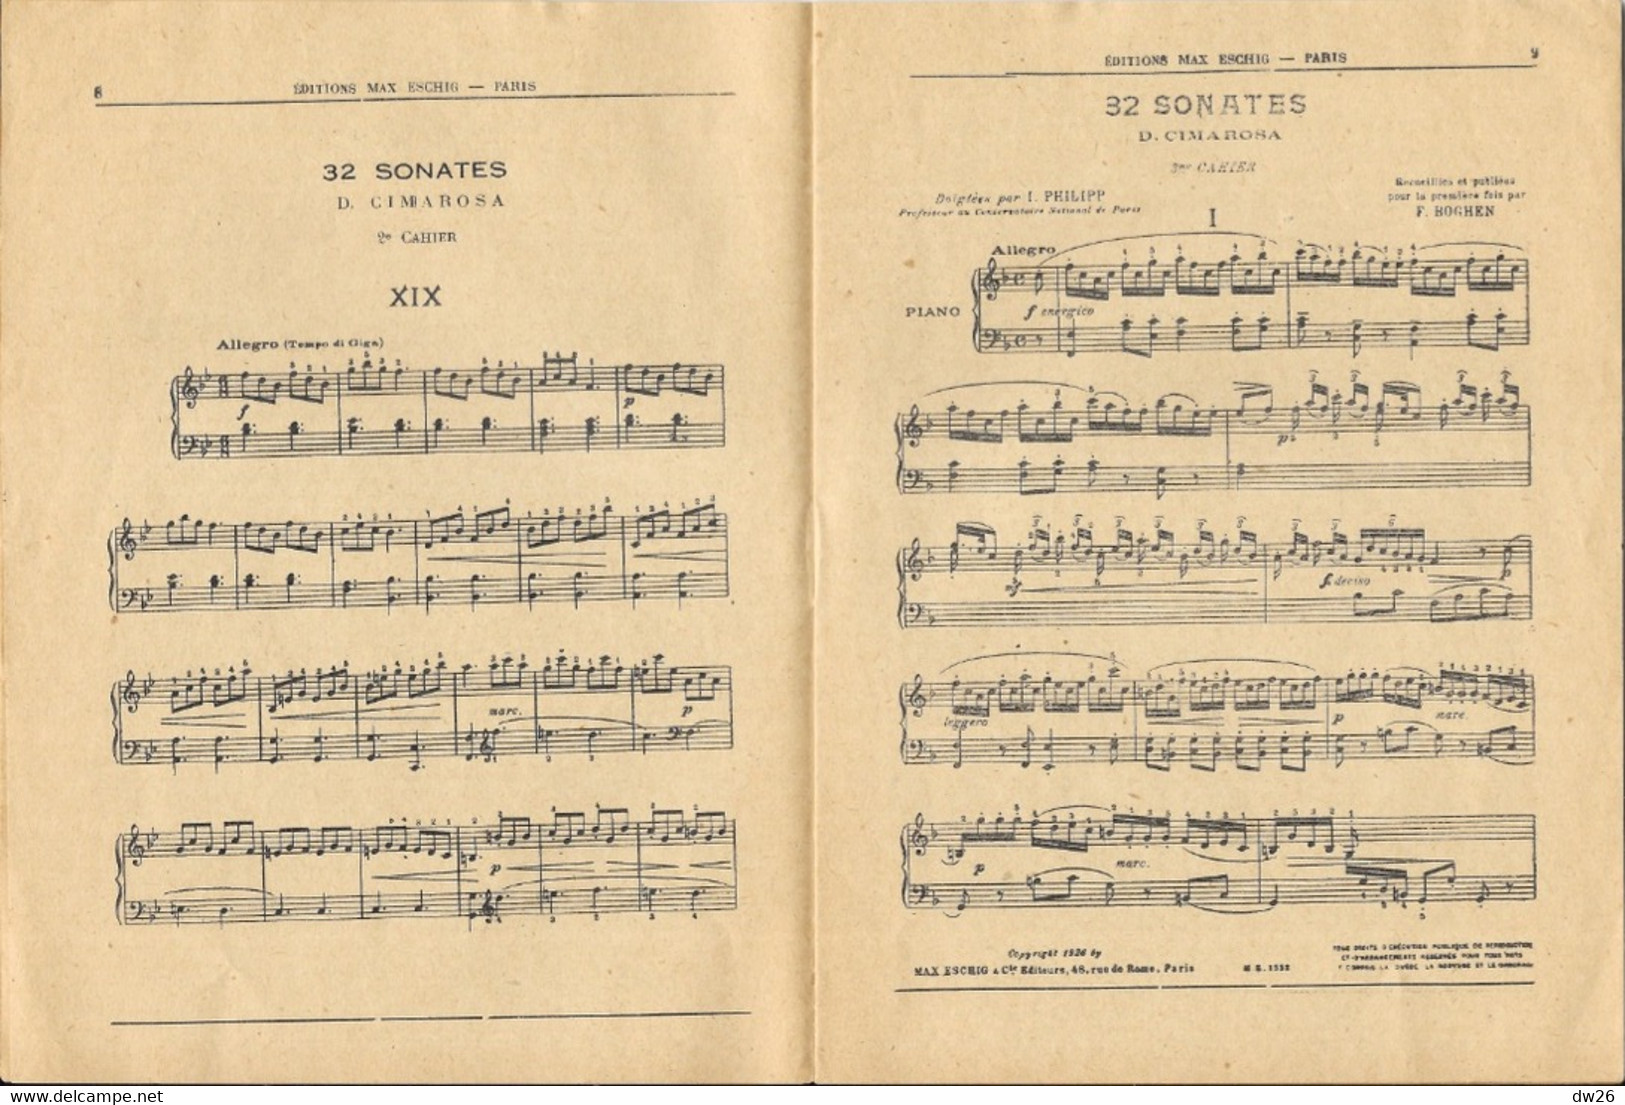 Partition D. Cimarosa: Sonates Anciennes Par F. Boghei - Edition Max Eschig (catalogue Thématique 1932) - Partitions Musicales Anciennes